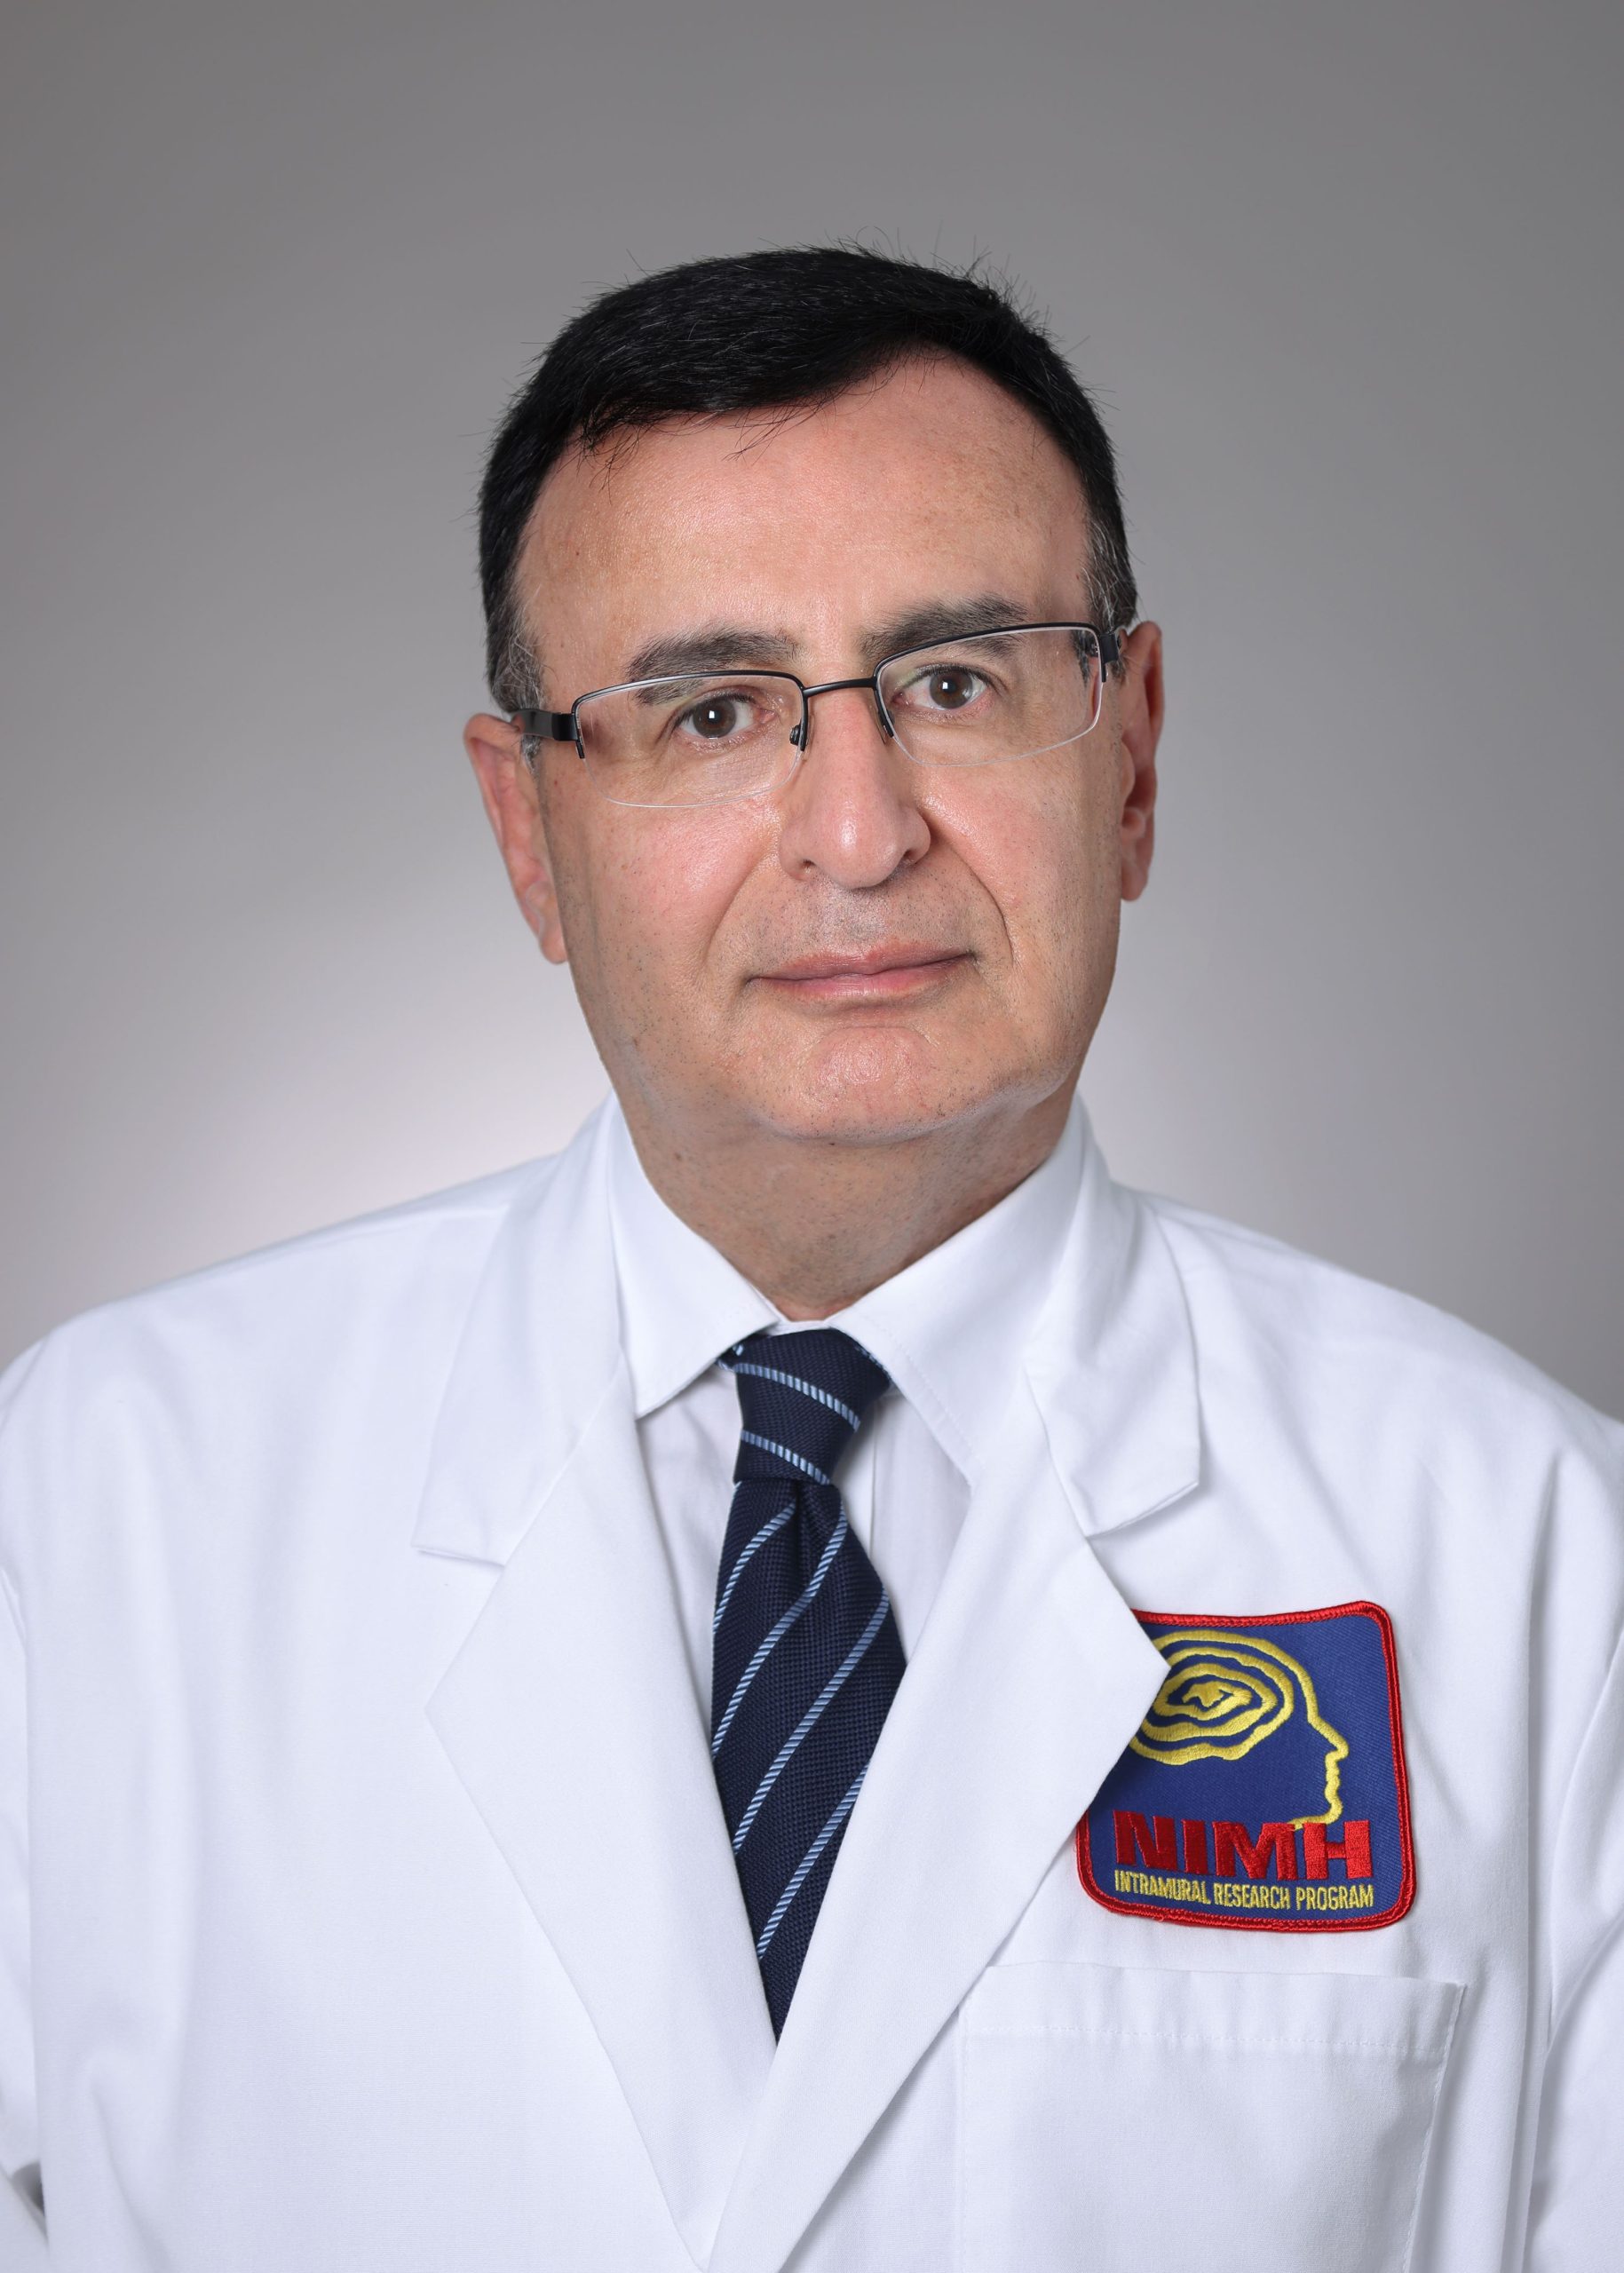 Sameer Sheth, M.D., Ph.D.